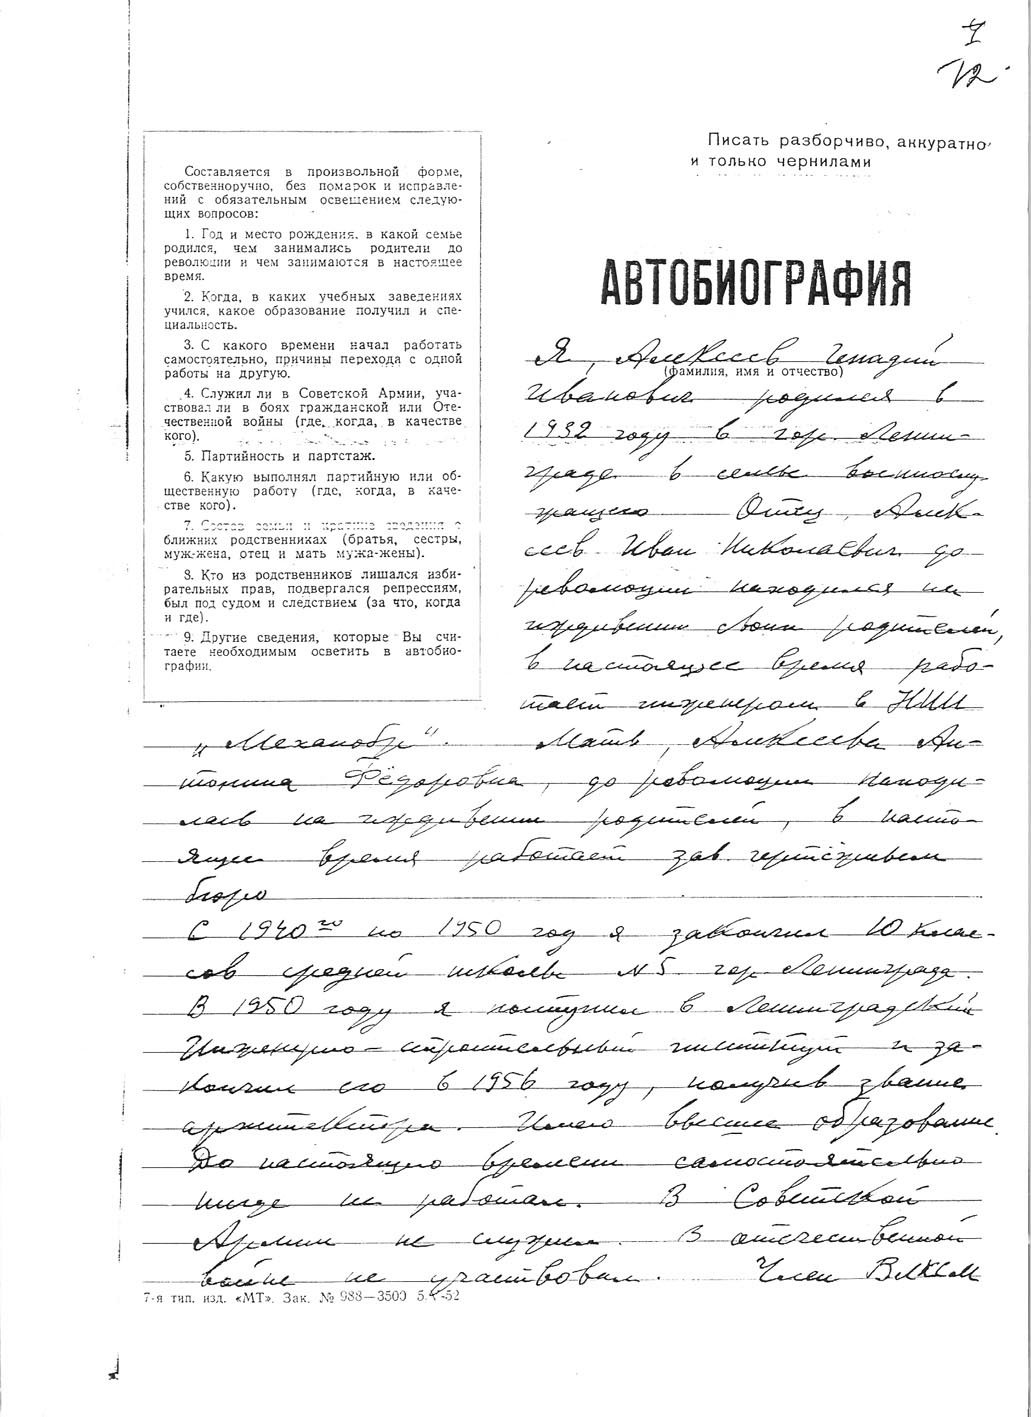 Автобиография Г.Алексеева. 1956г.